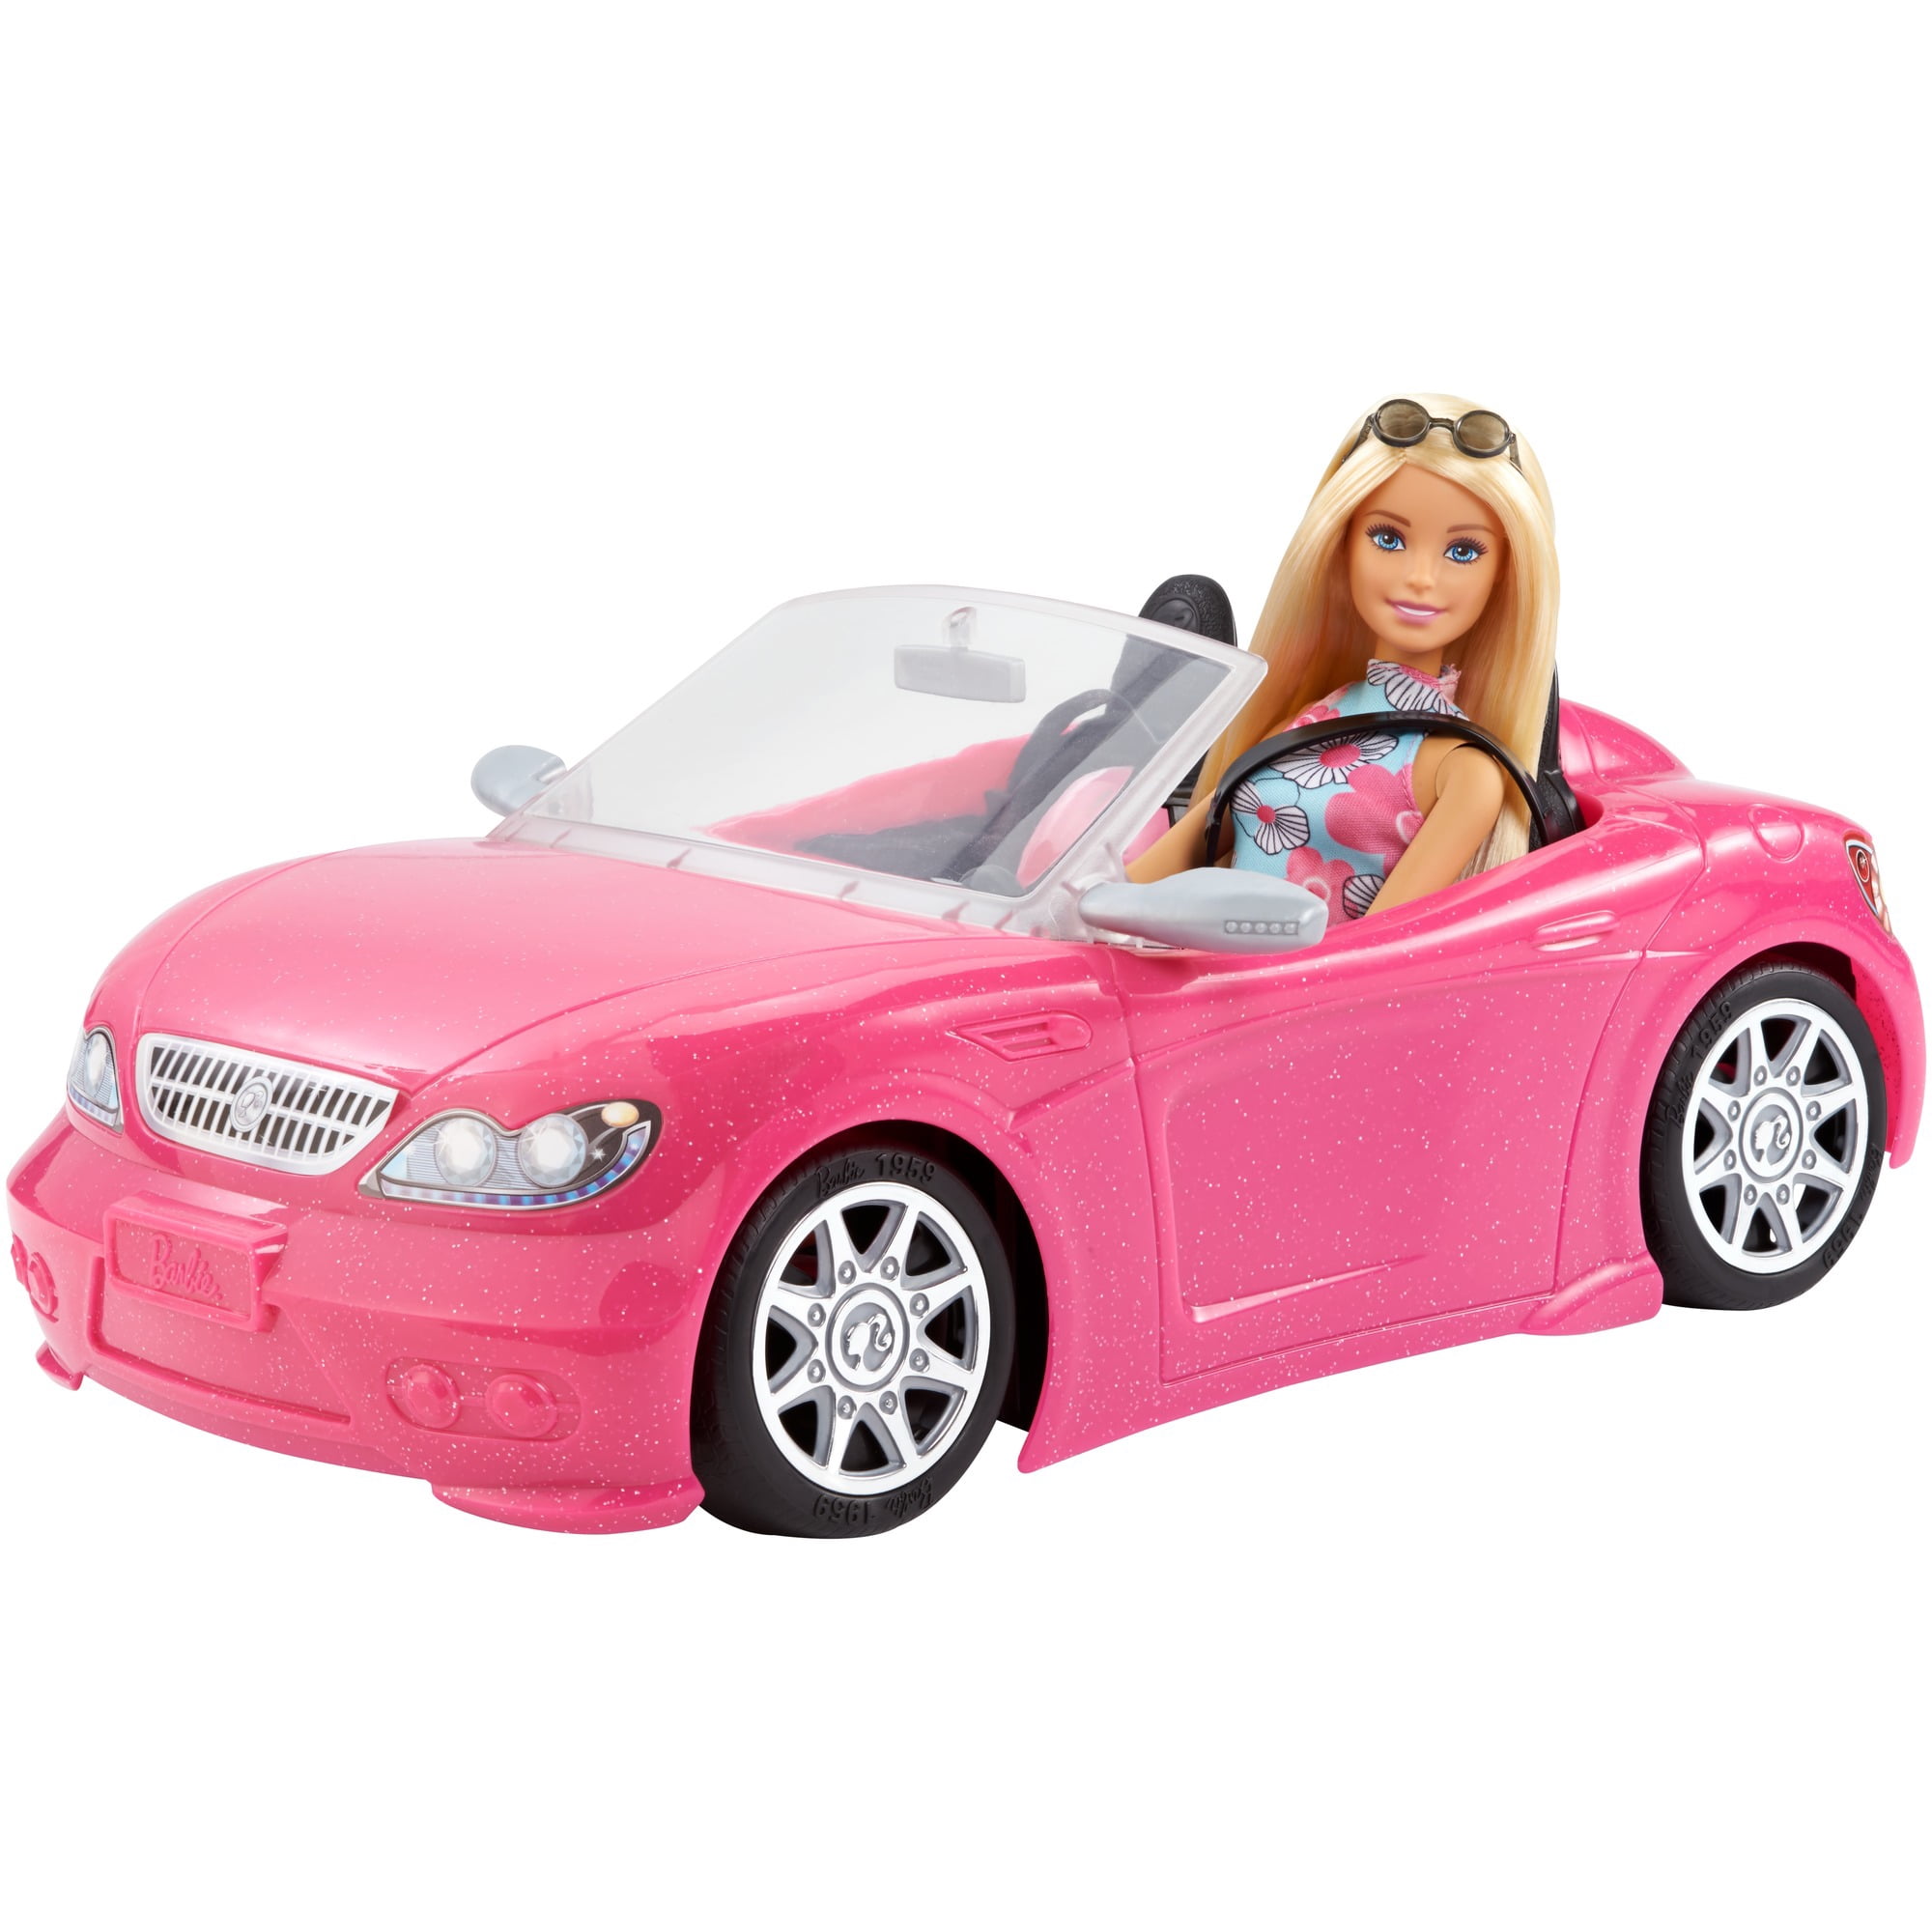 Машина для кукол купить. Набор Barbie гламурный кабриолет, djr55. Кабриолет Барби Нордпласт. Кукла Barbie и розовый кабриолет. Машина Barbie кабриолет hbt92.